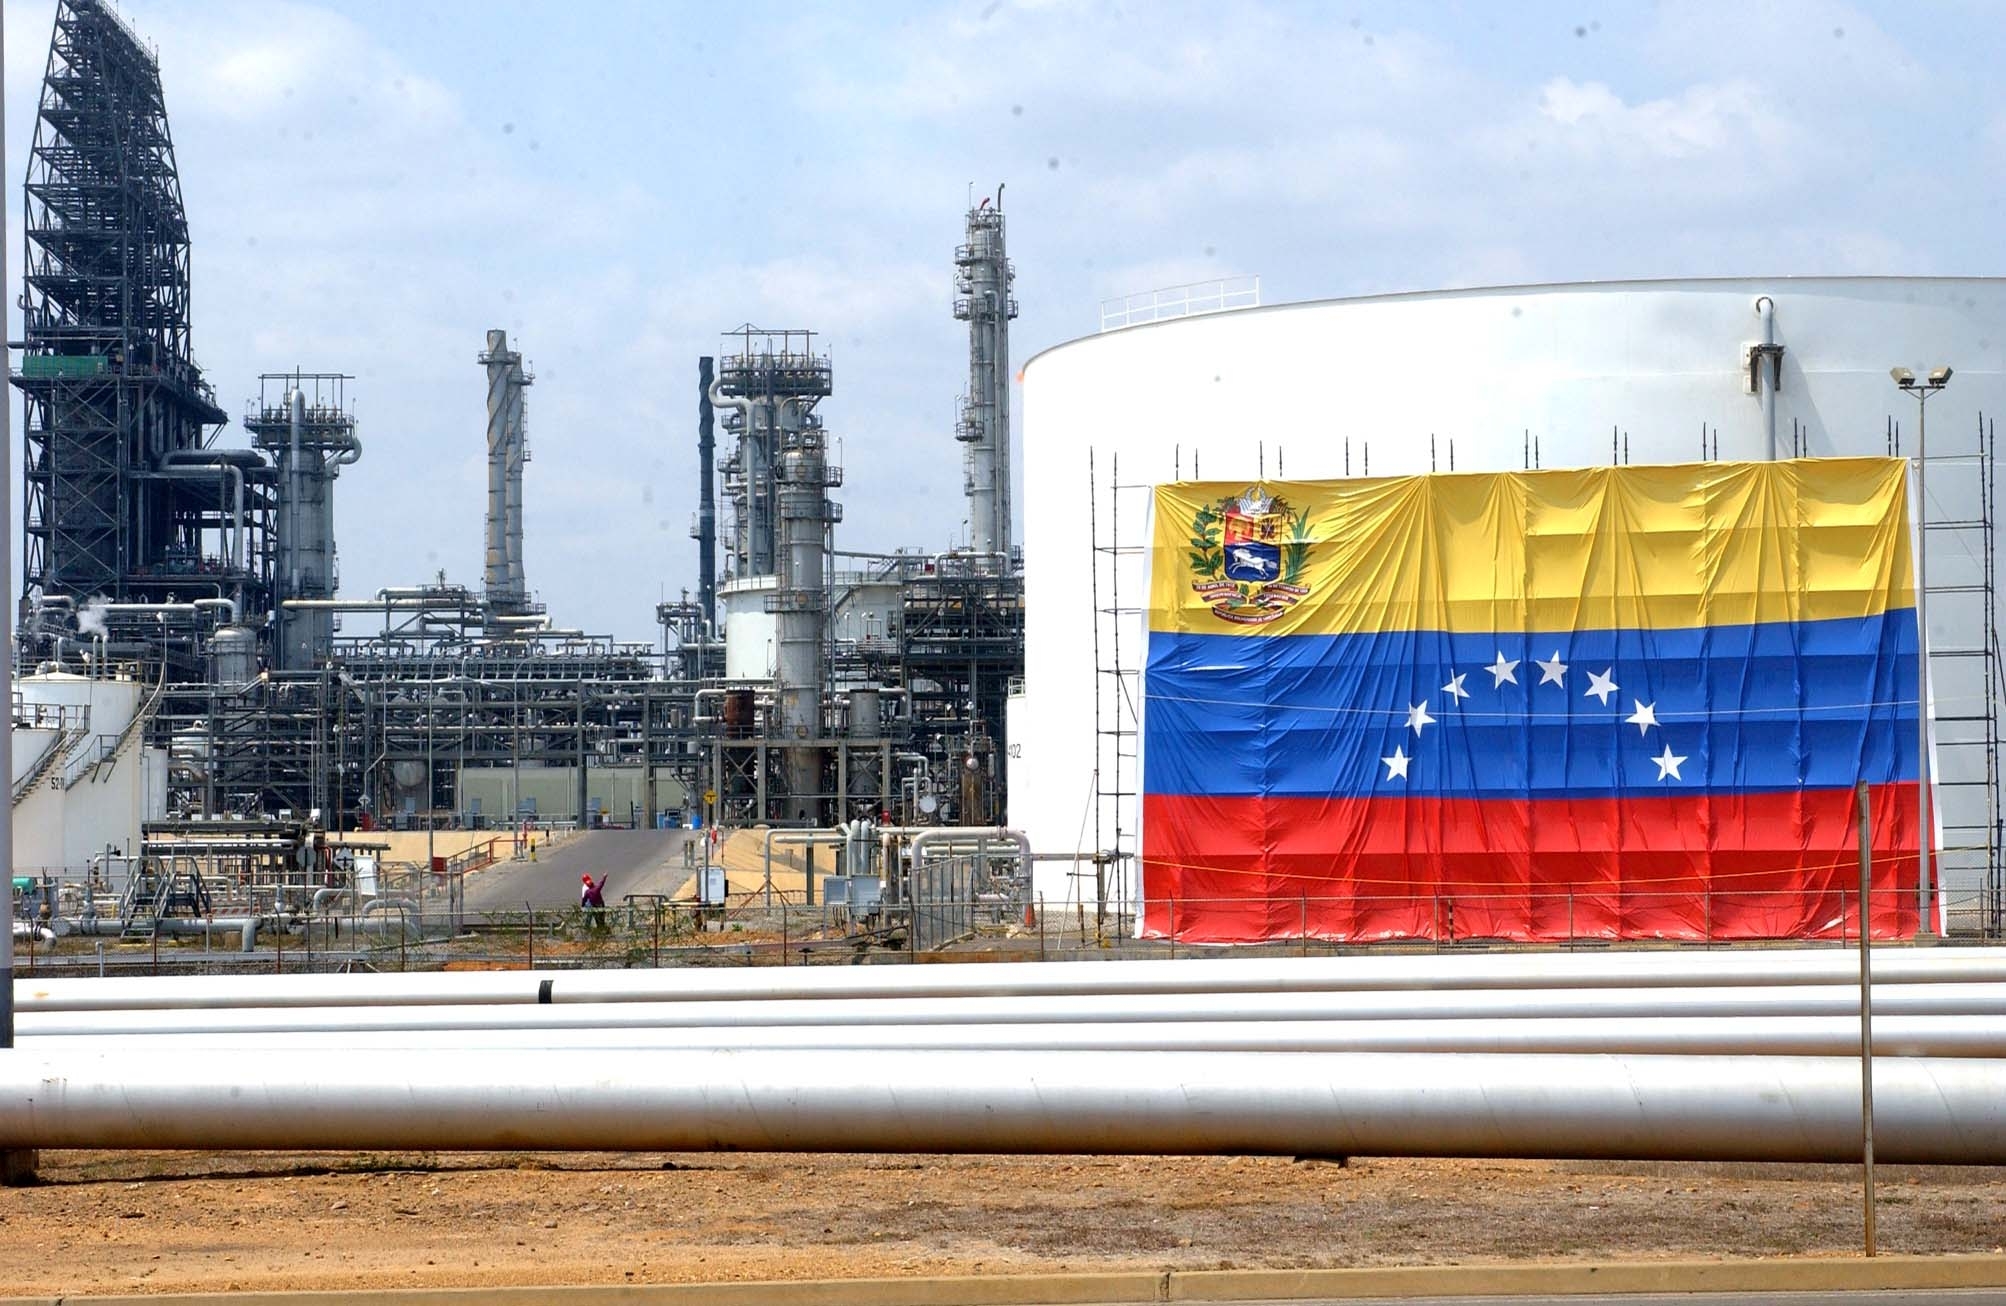 Industria petrolera venezolana sometida al imperio chino